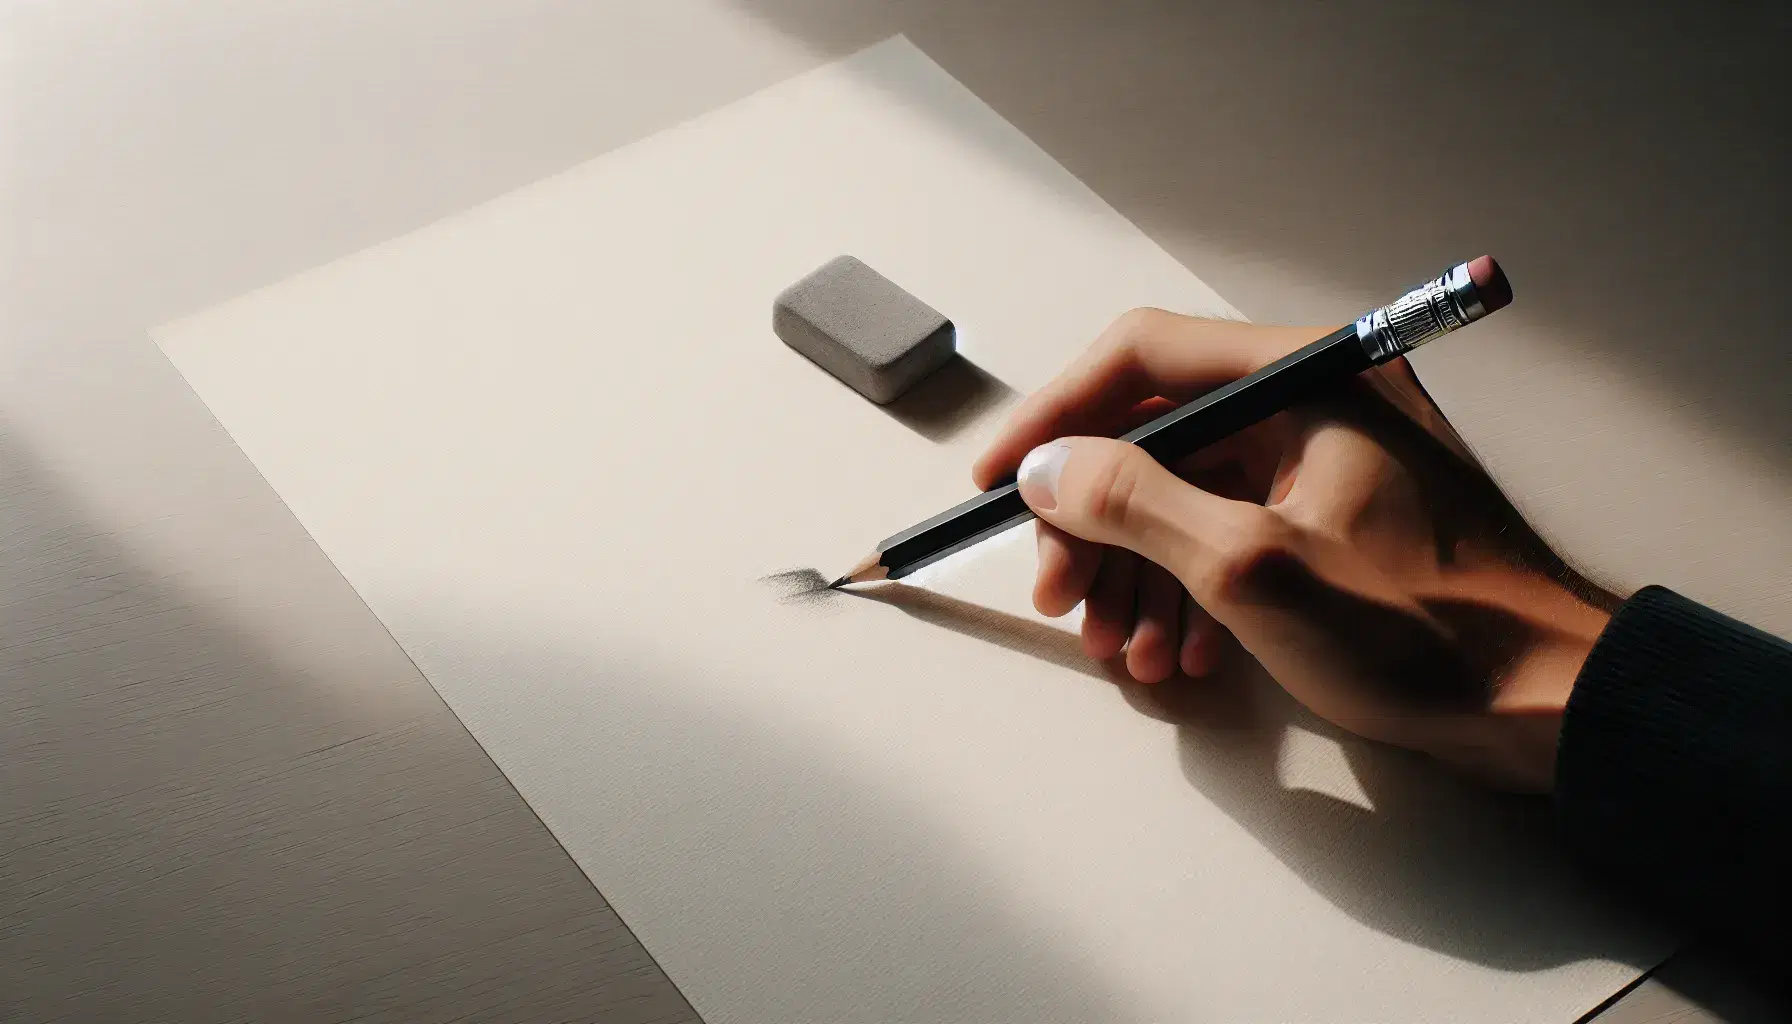 Mano sosteniendo lápiz negro con detalles plateados escribiendo en hoja blanca sobre superficie de madera clara, con trazos oscuros visibles en la esquina superior izquierda.